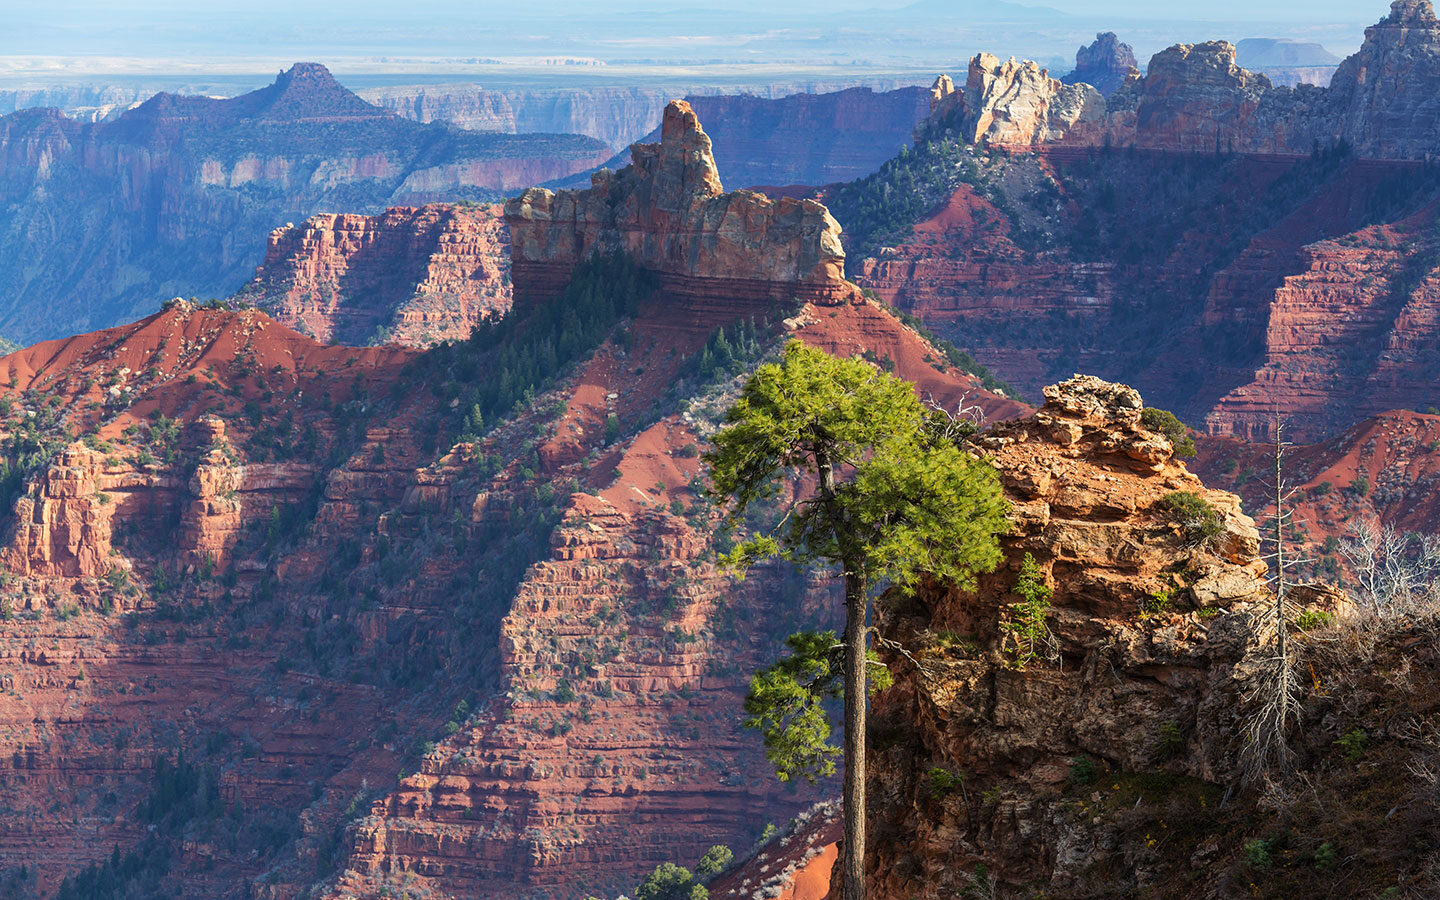 Grand Canyon views on a southwest USA road trip